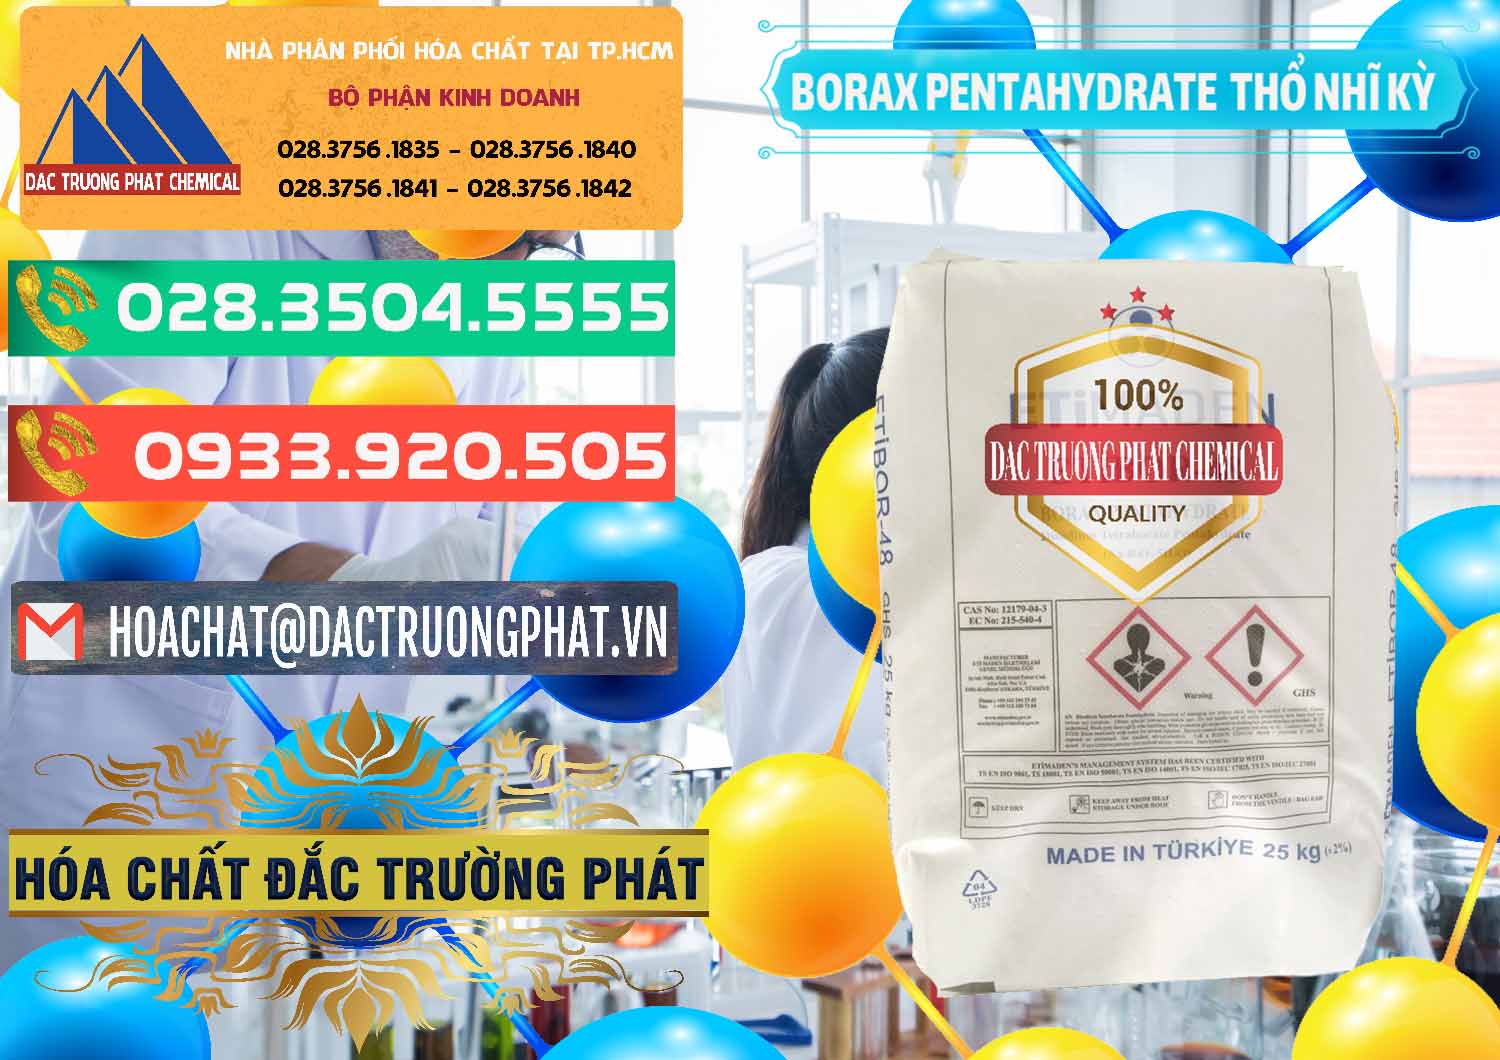 Đơn vị phân phối & bán Borax Pentahydrate Thổ Nhĩ Kỳ Turkey - 0431 - Công ty chuyên kinh doanh - phân phối hóa chất tại TP.HCM - congtyhoachat.com.vn